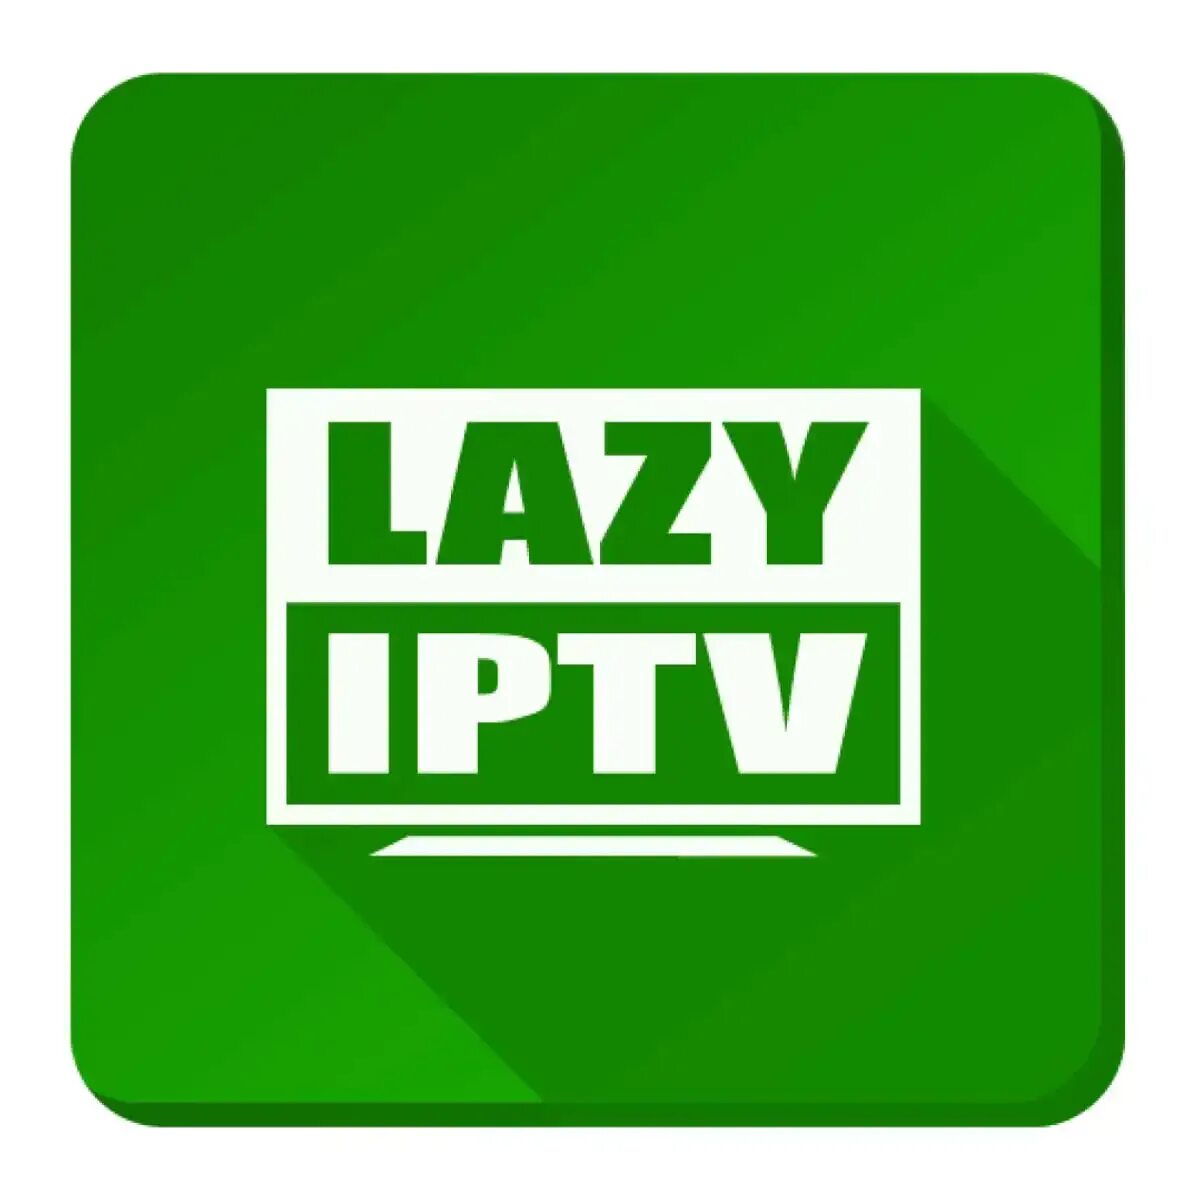 Lazy IPTV. LAZYIPTV Deluxe логотип. Логотип LAZYMEDIA. Lazy IPTV Deluxe иконка.